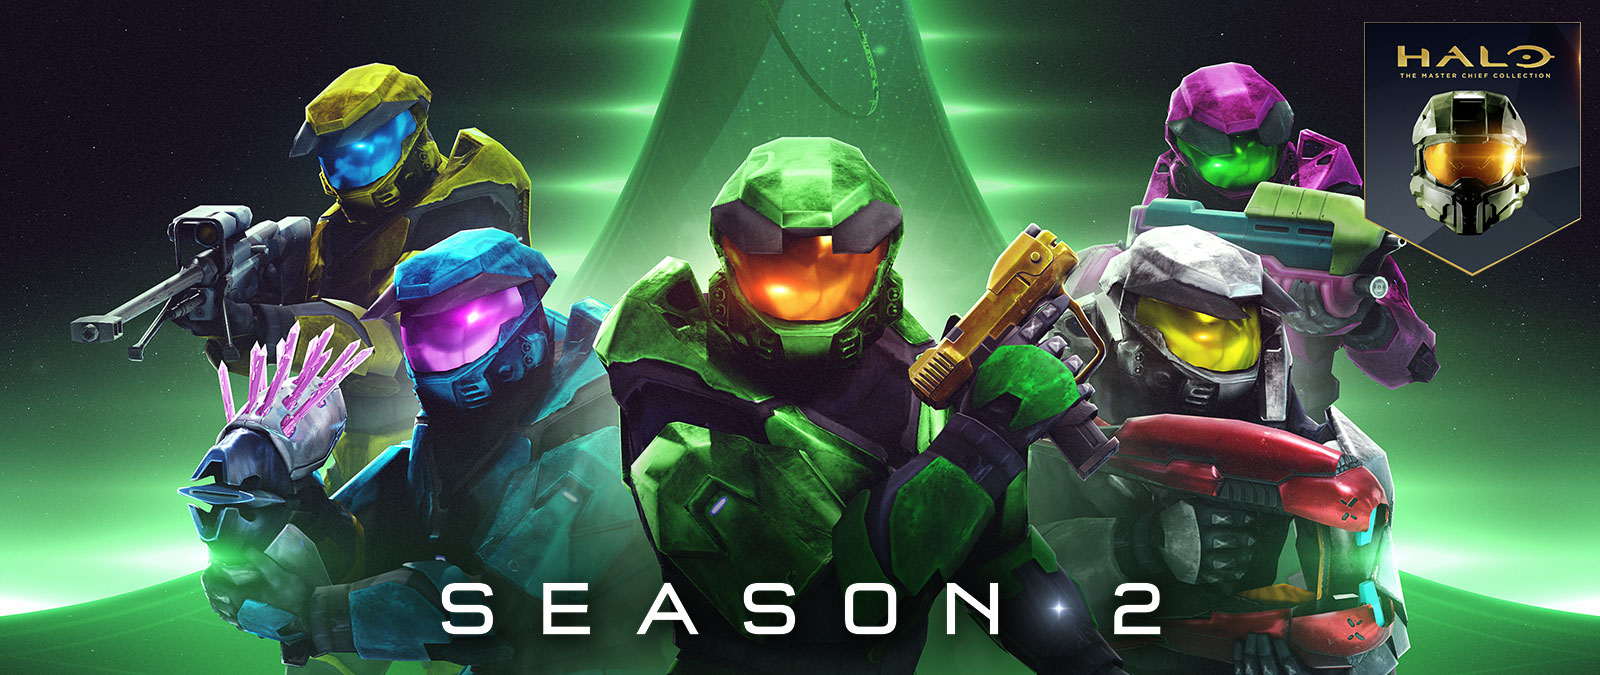 Halo: «Коллекция Мастера Чифа», 2 сезон, 5 спартанцев из Halo Combat Evolved держат в руках разноцветное оружие, такое как игломет и пистолет